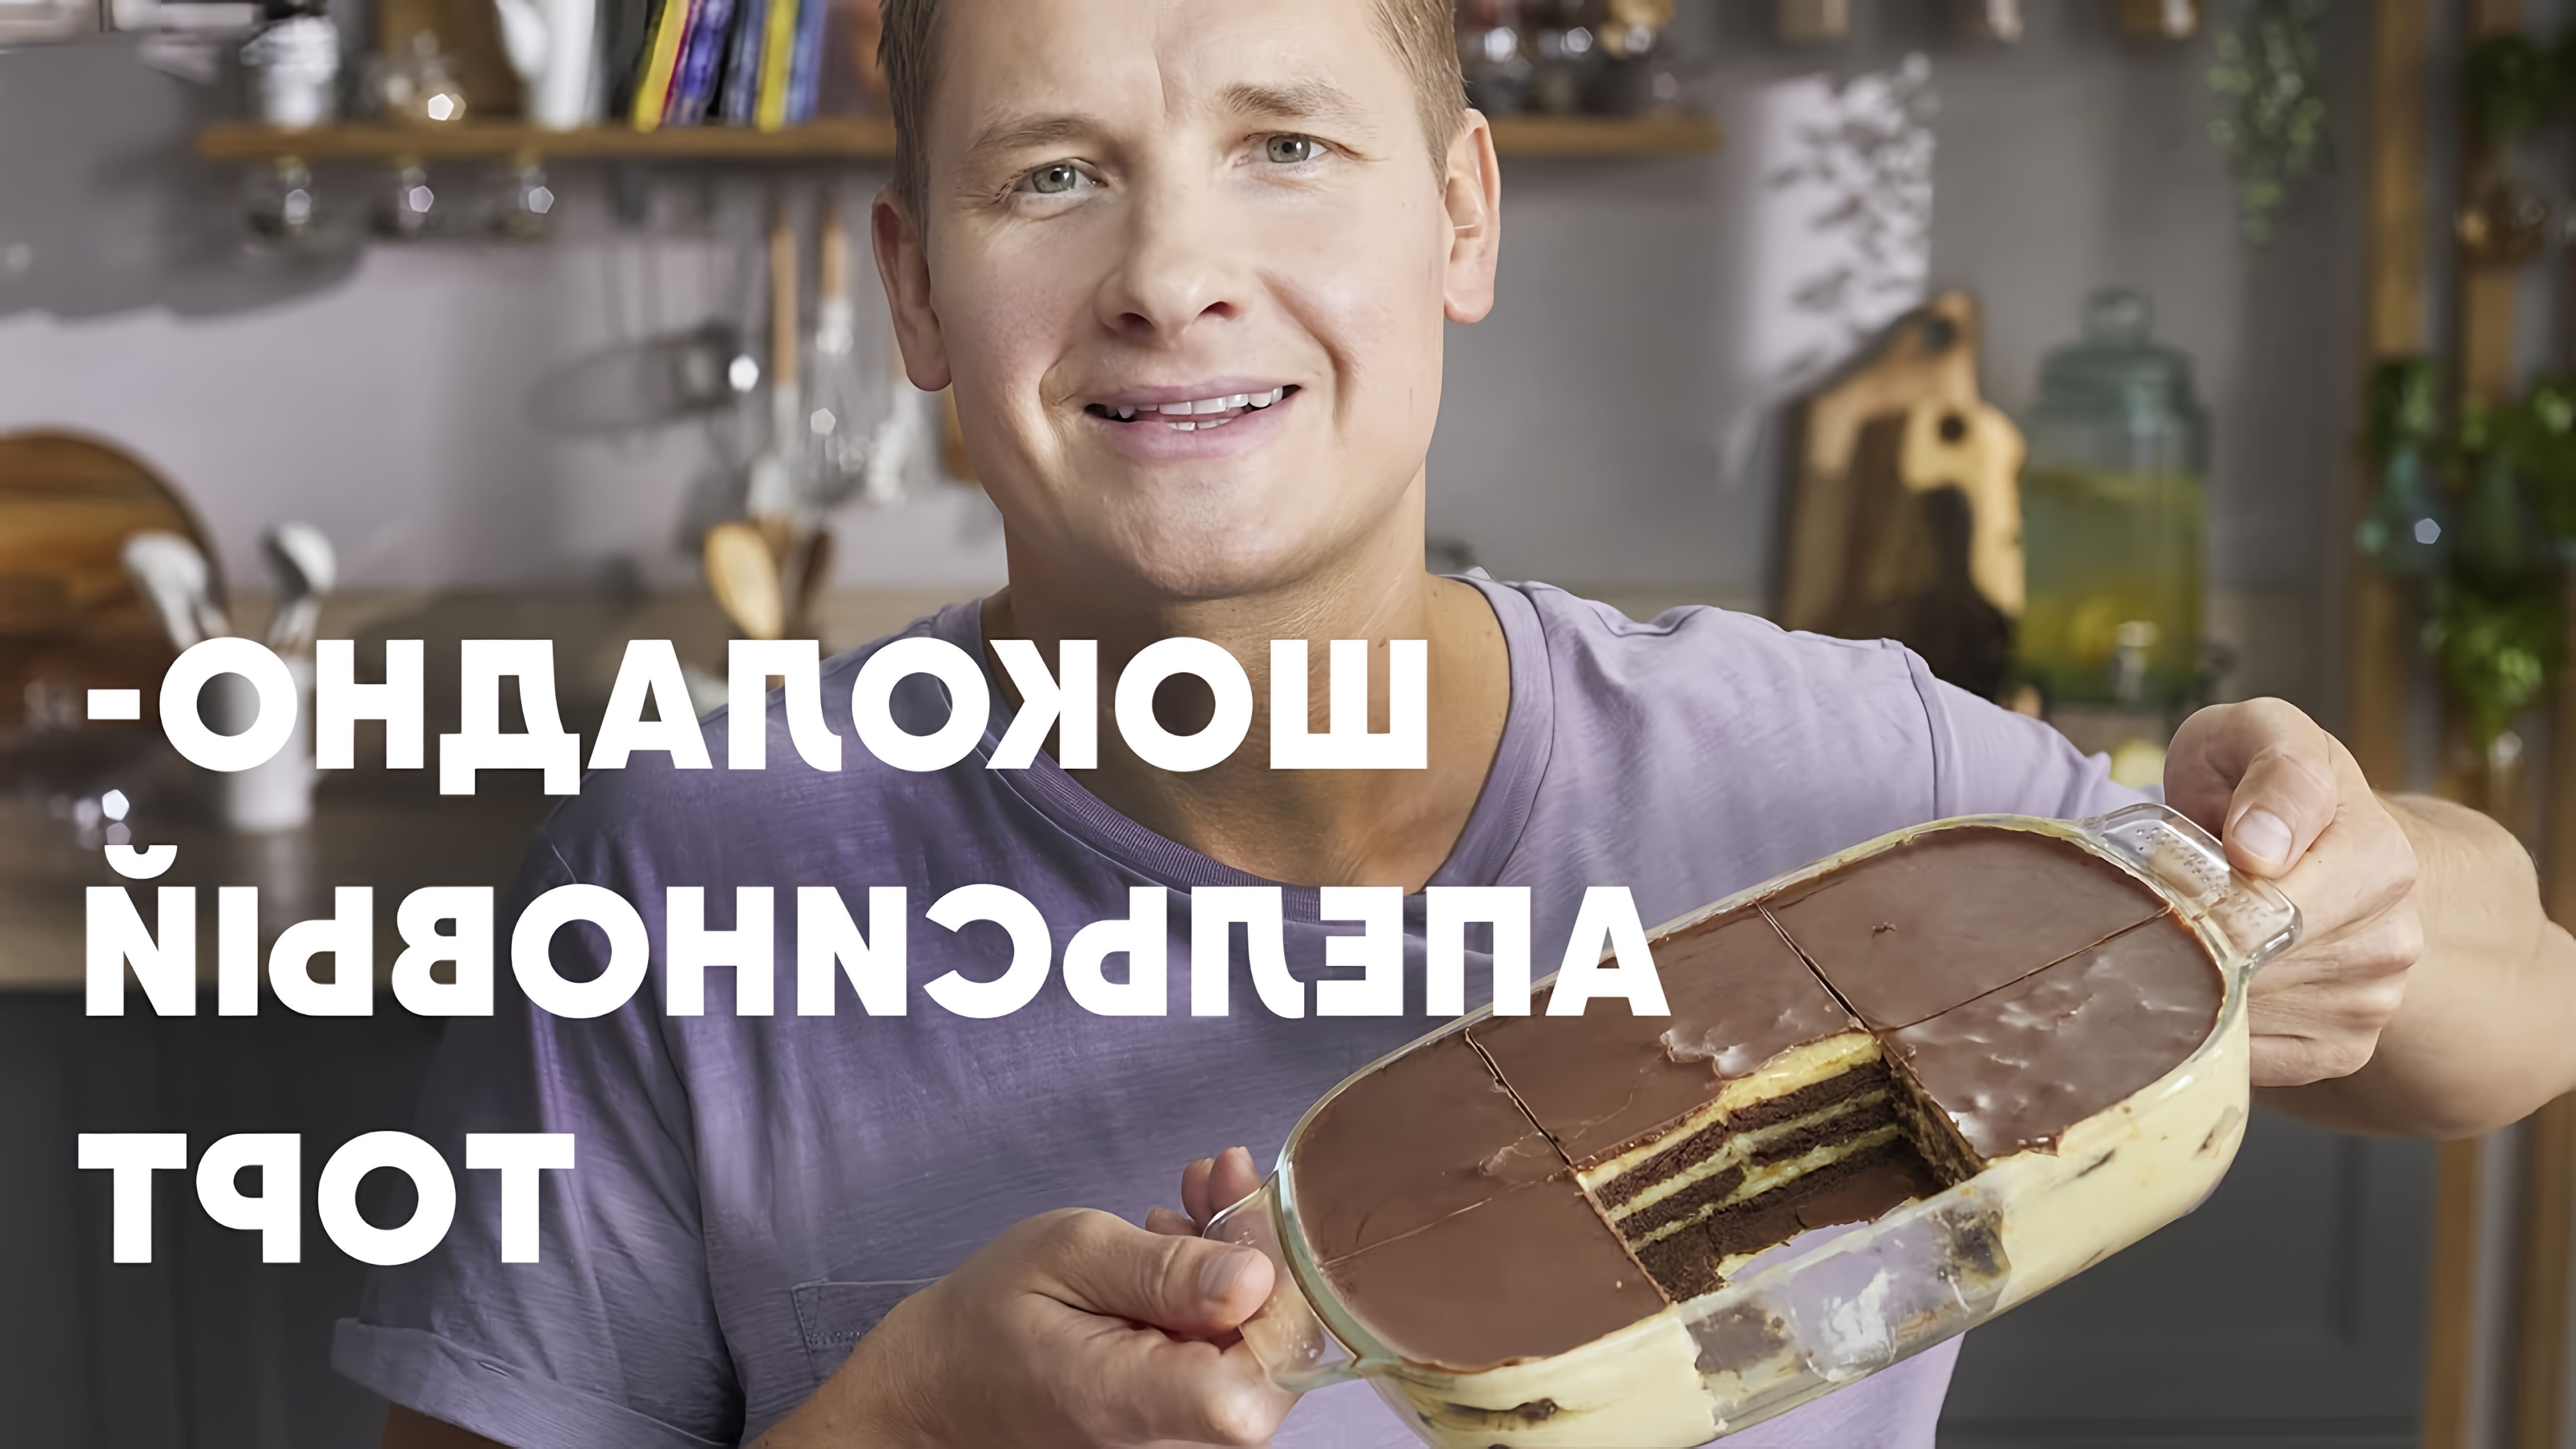 В этом видео шеф-повар Белькович показывает, как приготовить шоколадно-апельсиновый торт за 15 минут